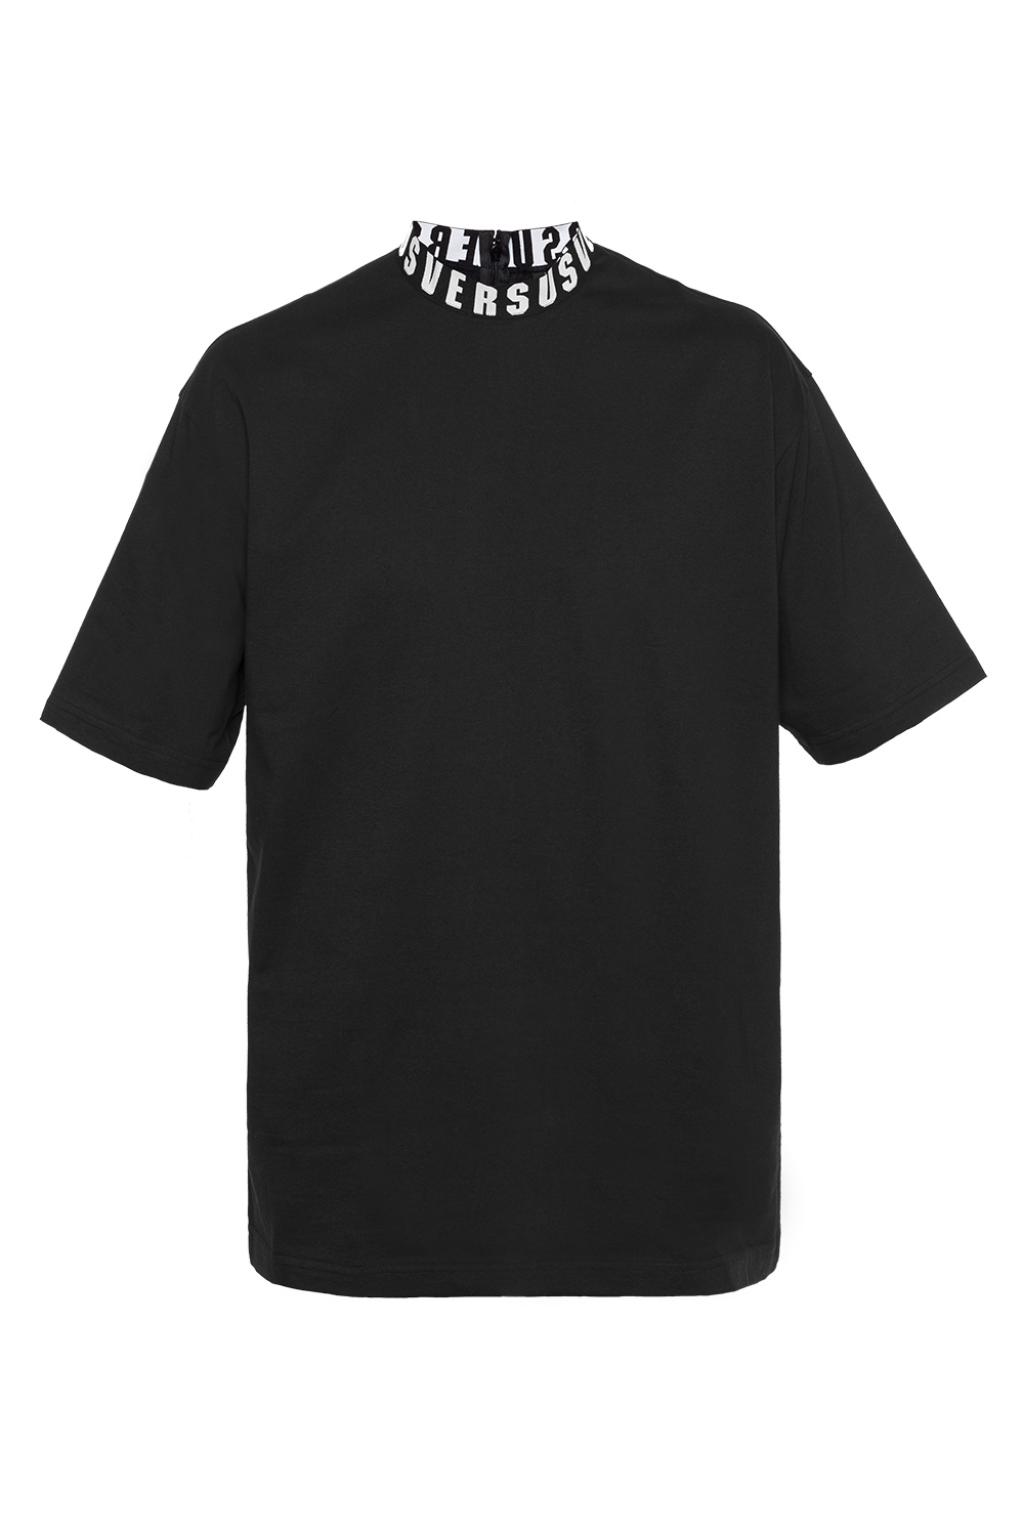 Black Turtleneck T-shirt Versace Versus - Vitkac TW